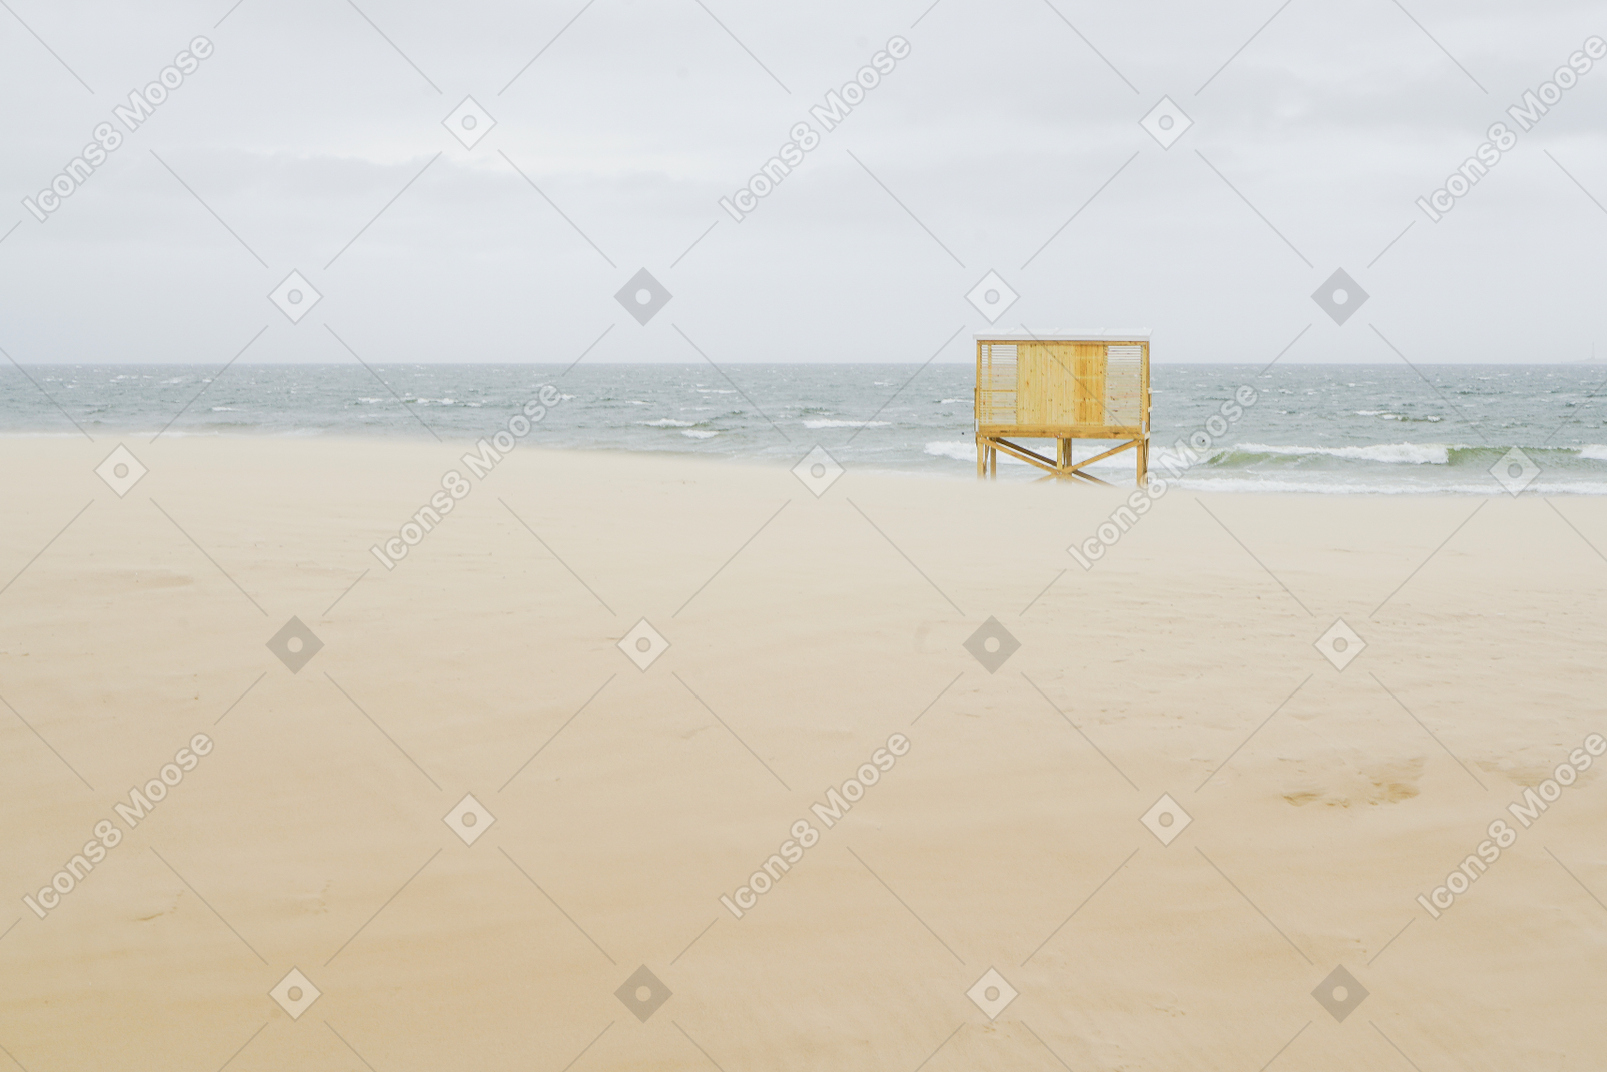 Beira-mar com uma cabana de praia amarela